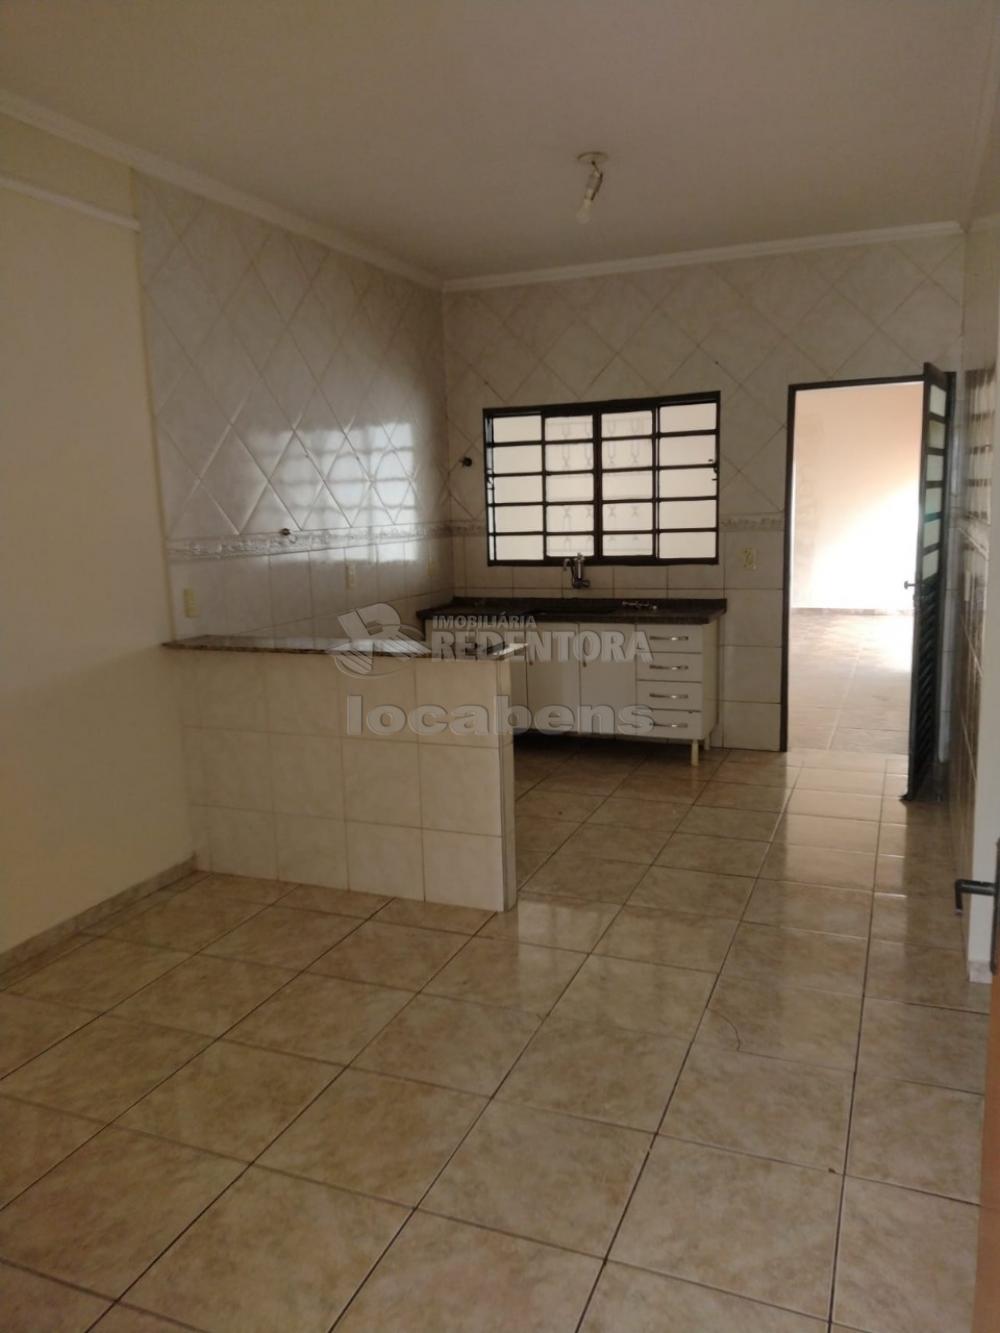 Comprar Casa / Padrão em São José do Rio Preto R$ 320.000,00 - Foto 3